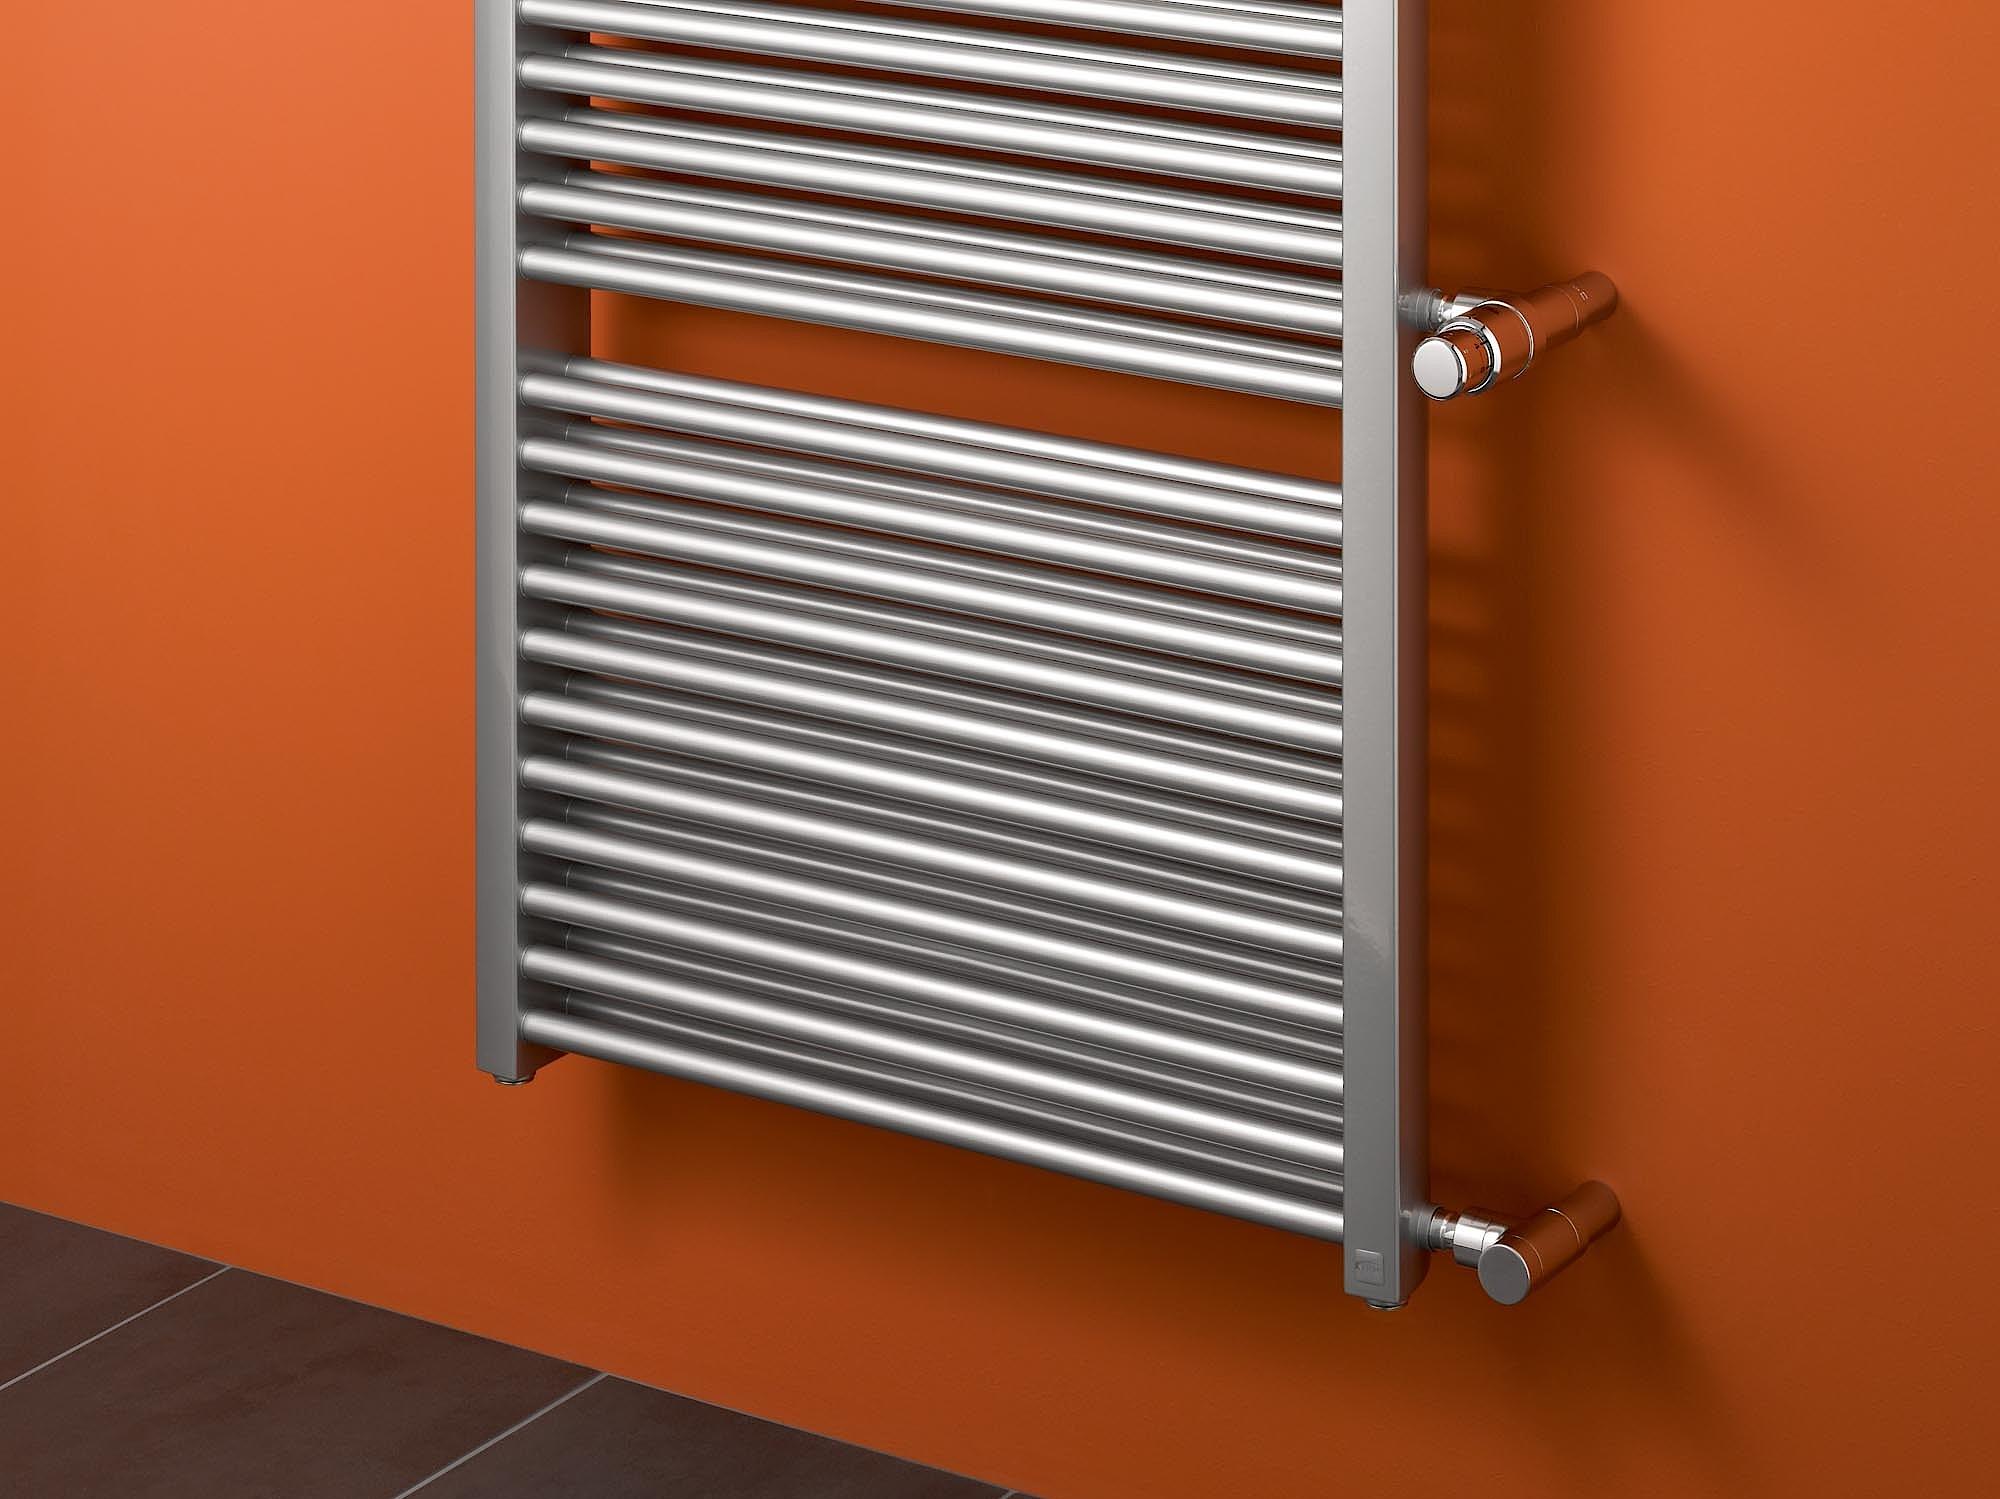 Kermi Duett dizaino radiatoriai - rankšluosčių džiovintuvai – greitas ir efektyvus radiatorių keitimo sprendimas modernizuojant šildymo sistemą.